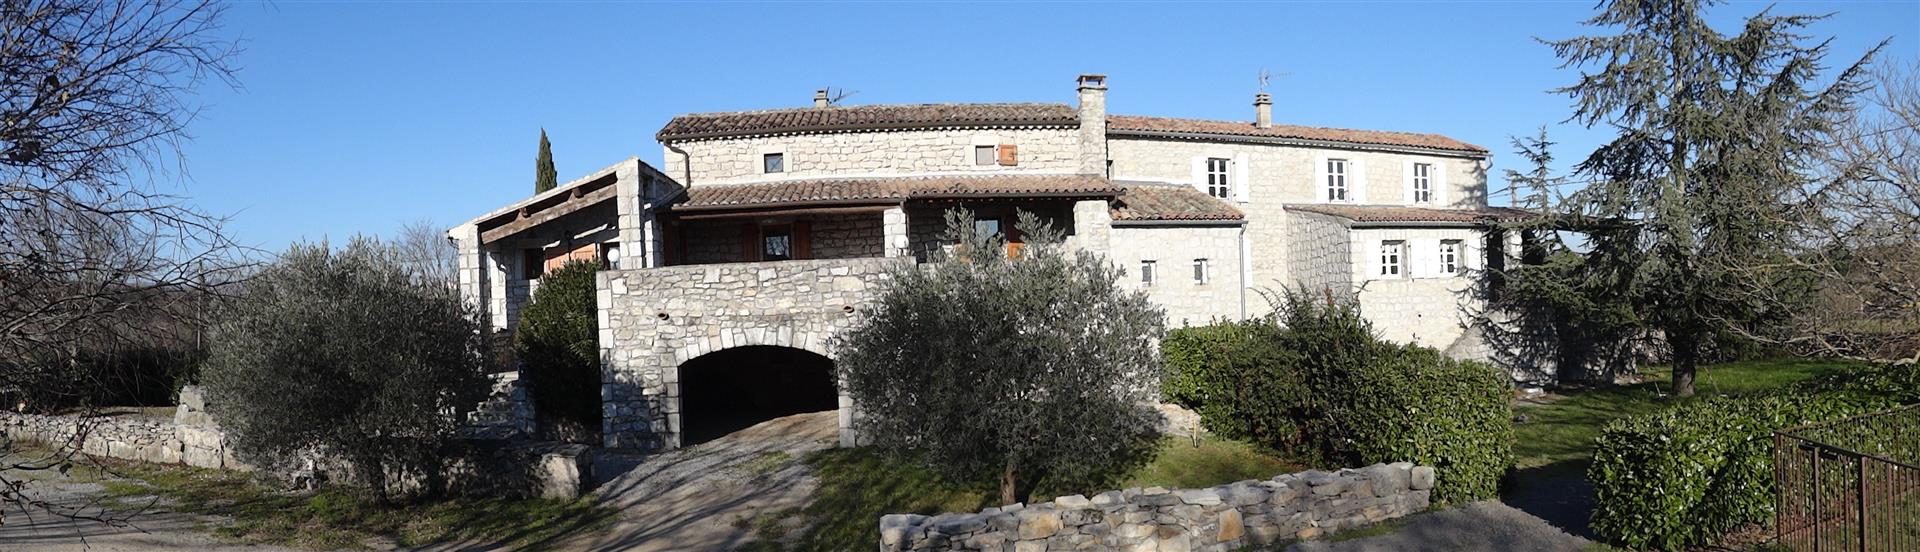 Bela e grande casa velha Ardèche de caráter em pedra